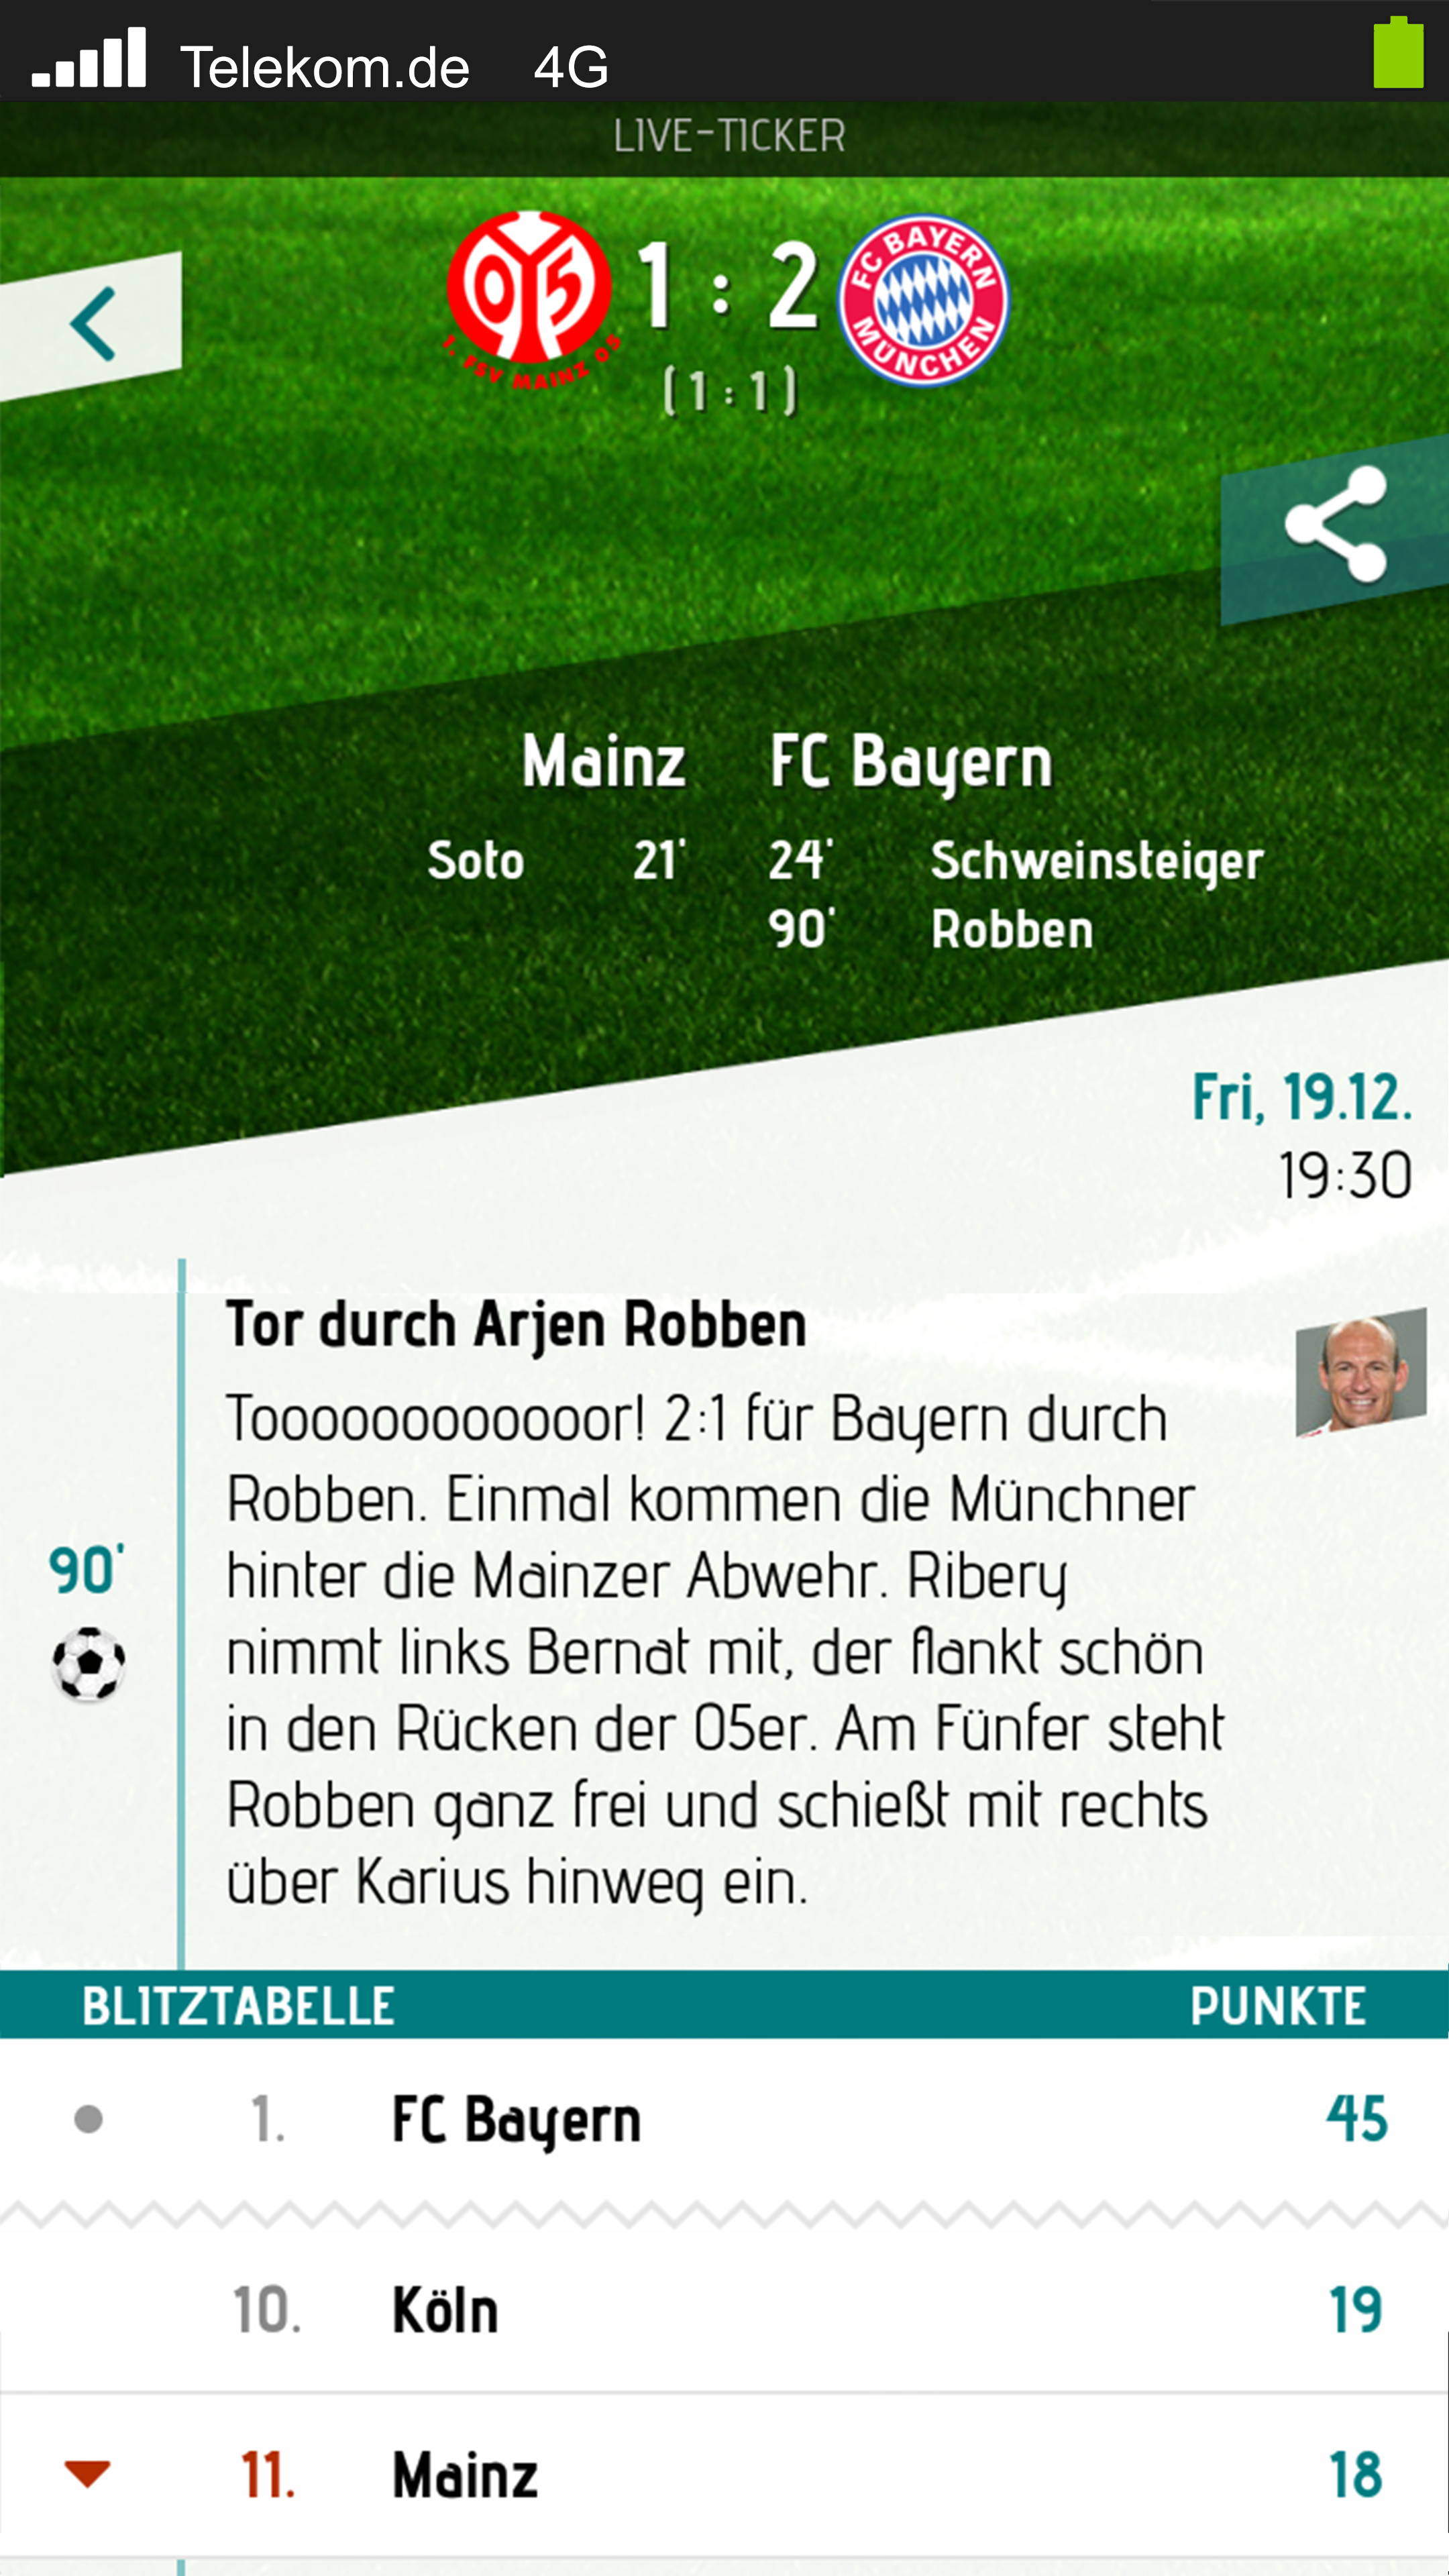 Android application Herzrasen Fußball Live Ticker screenshort